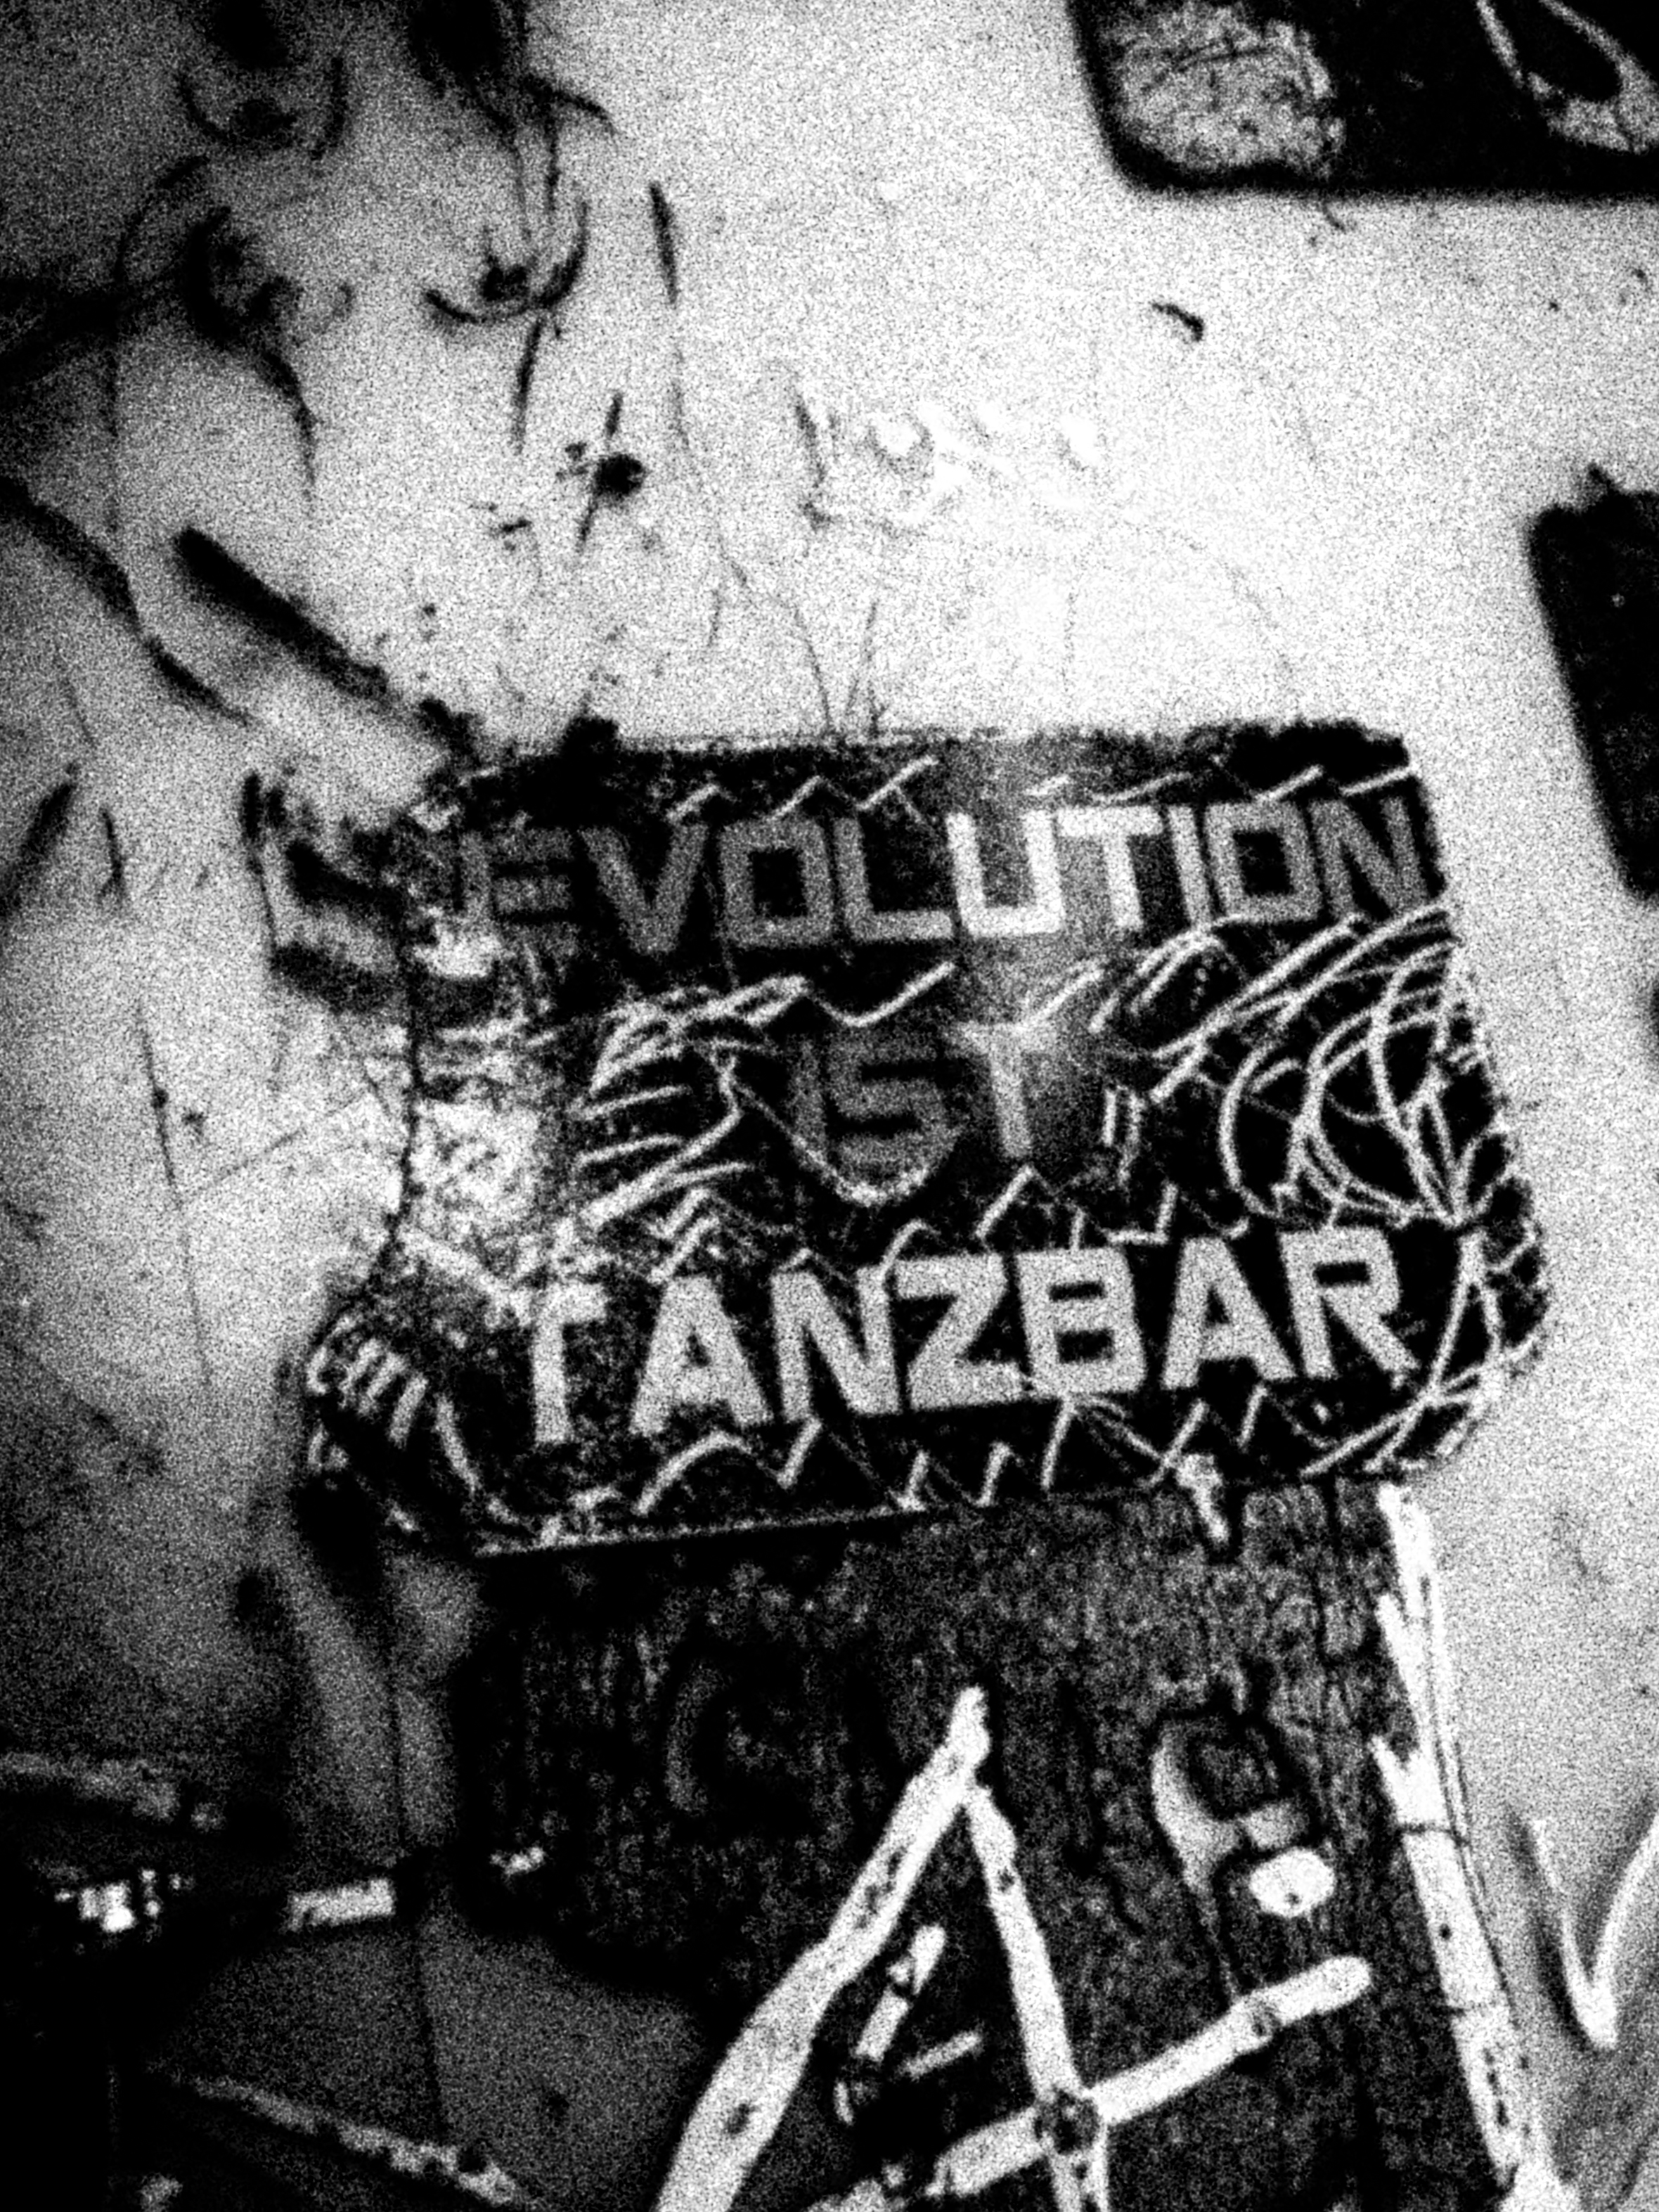 ams_evolution_ist_tanzbar.jpg